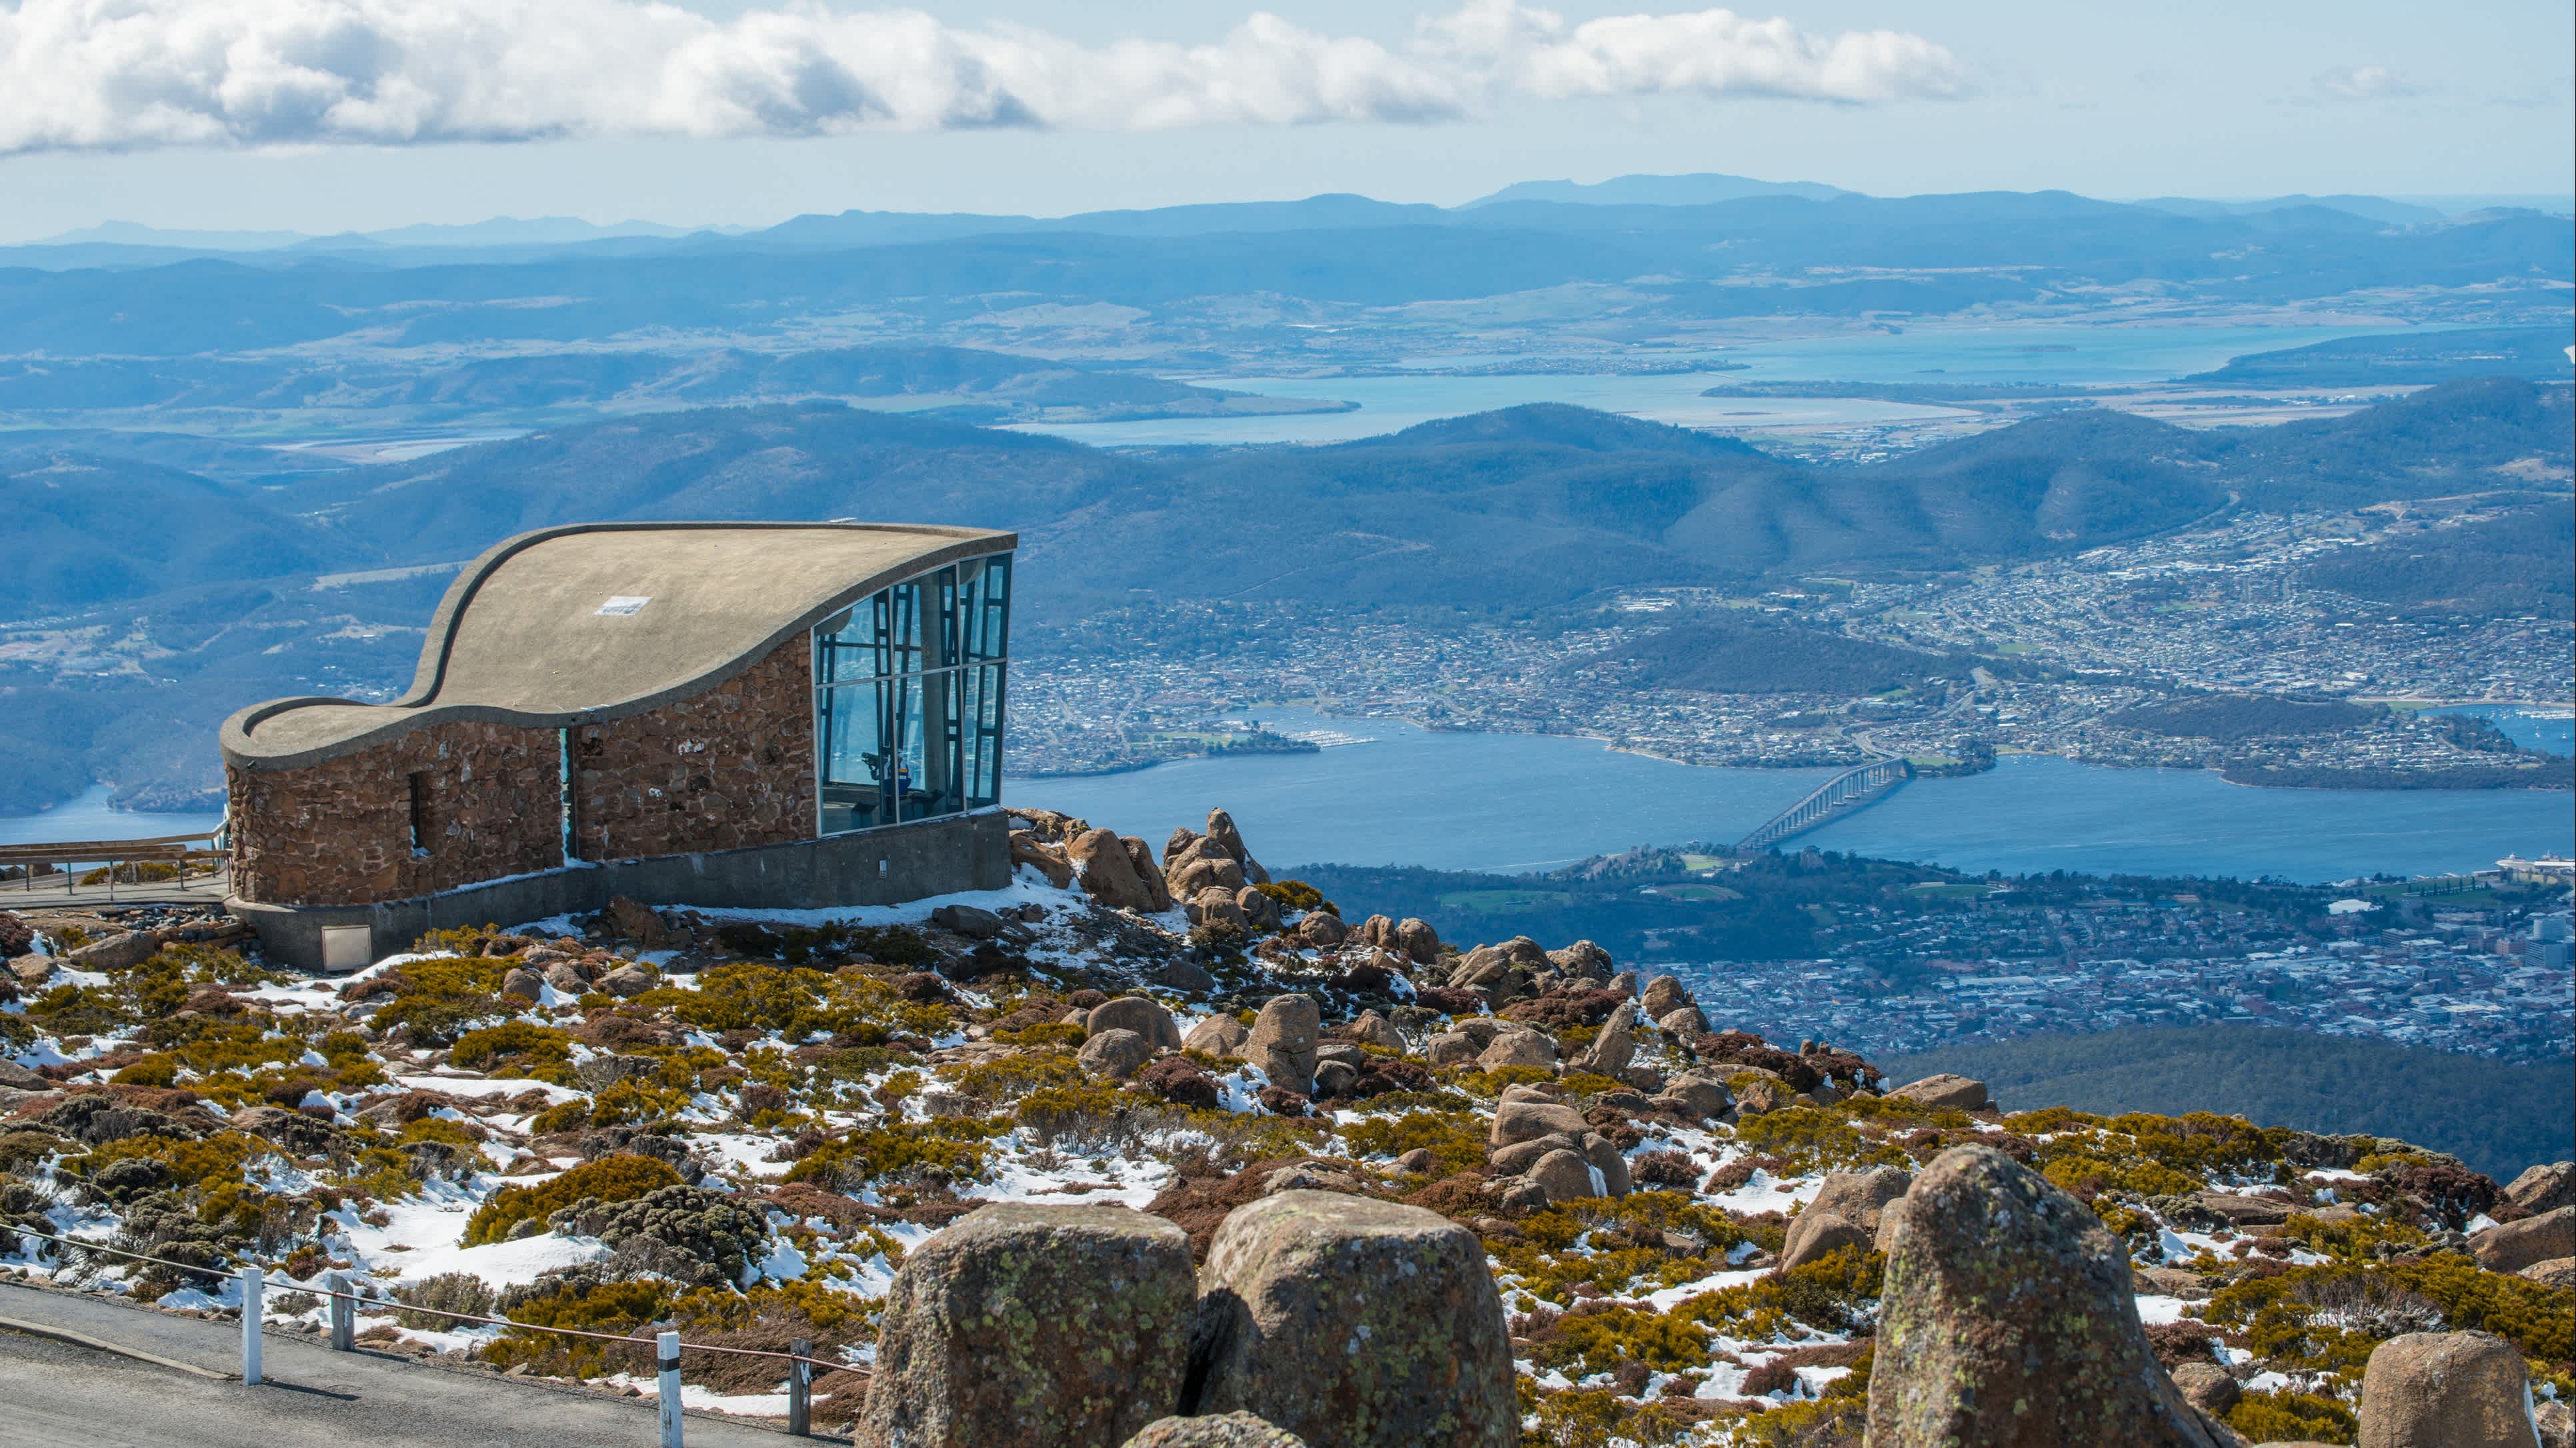 Uitzicht vanaf een heuvel in de stad Hobart in Australië